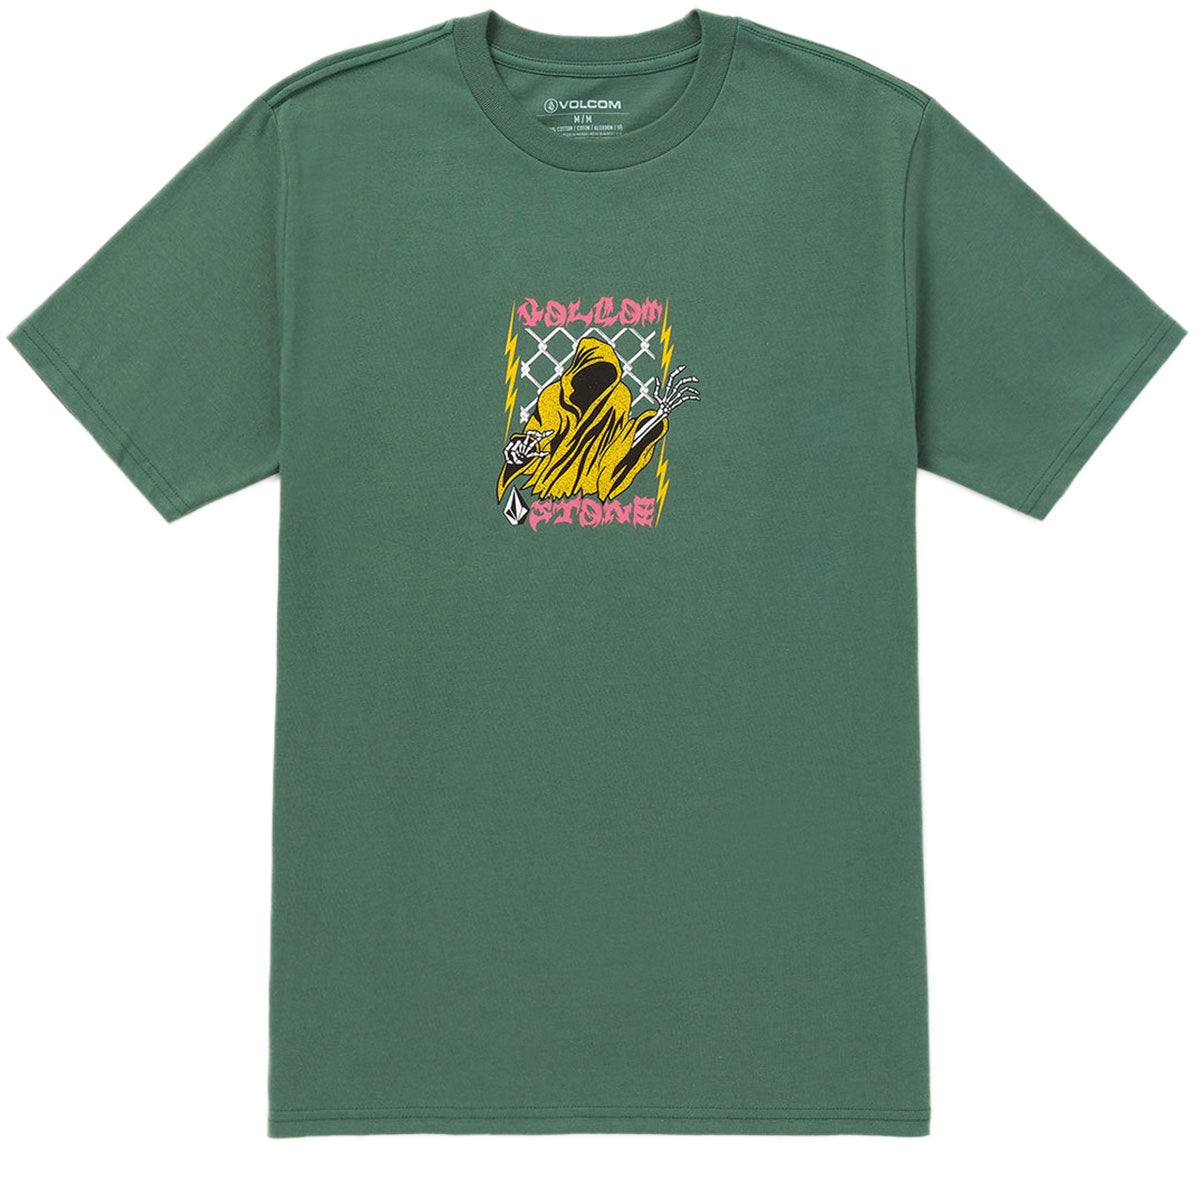 Volcom Thundertaker T-Shirt - Fir Green image 1